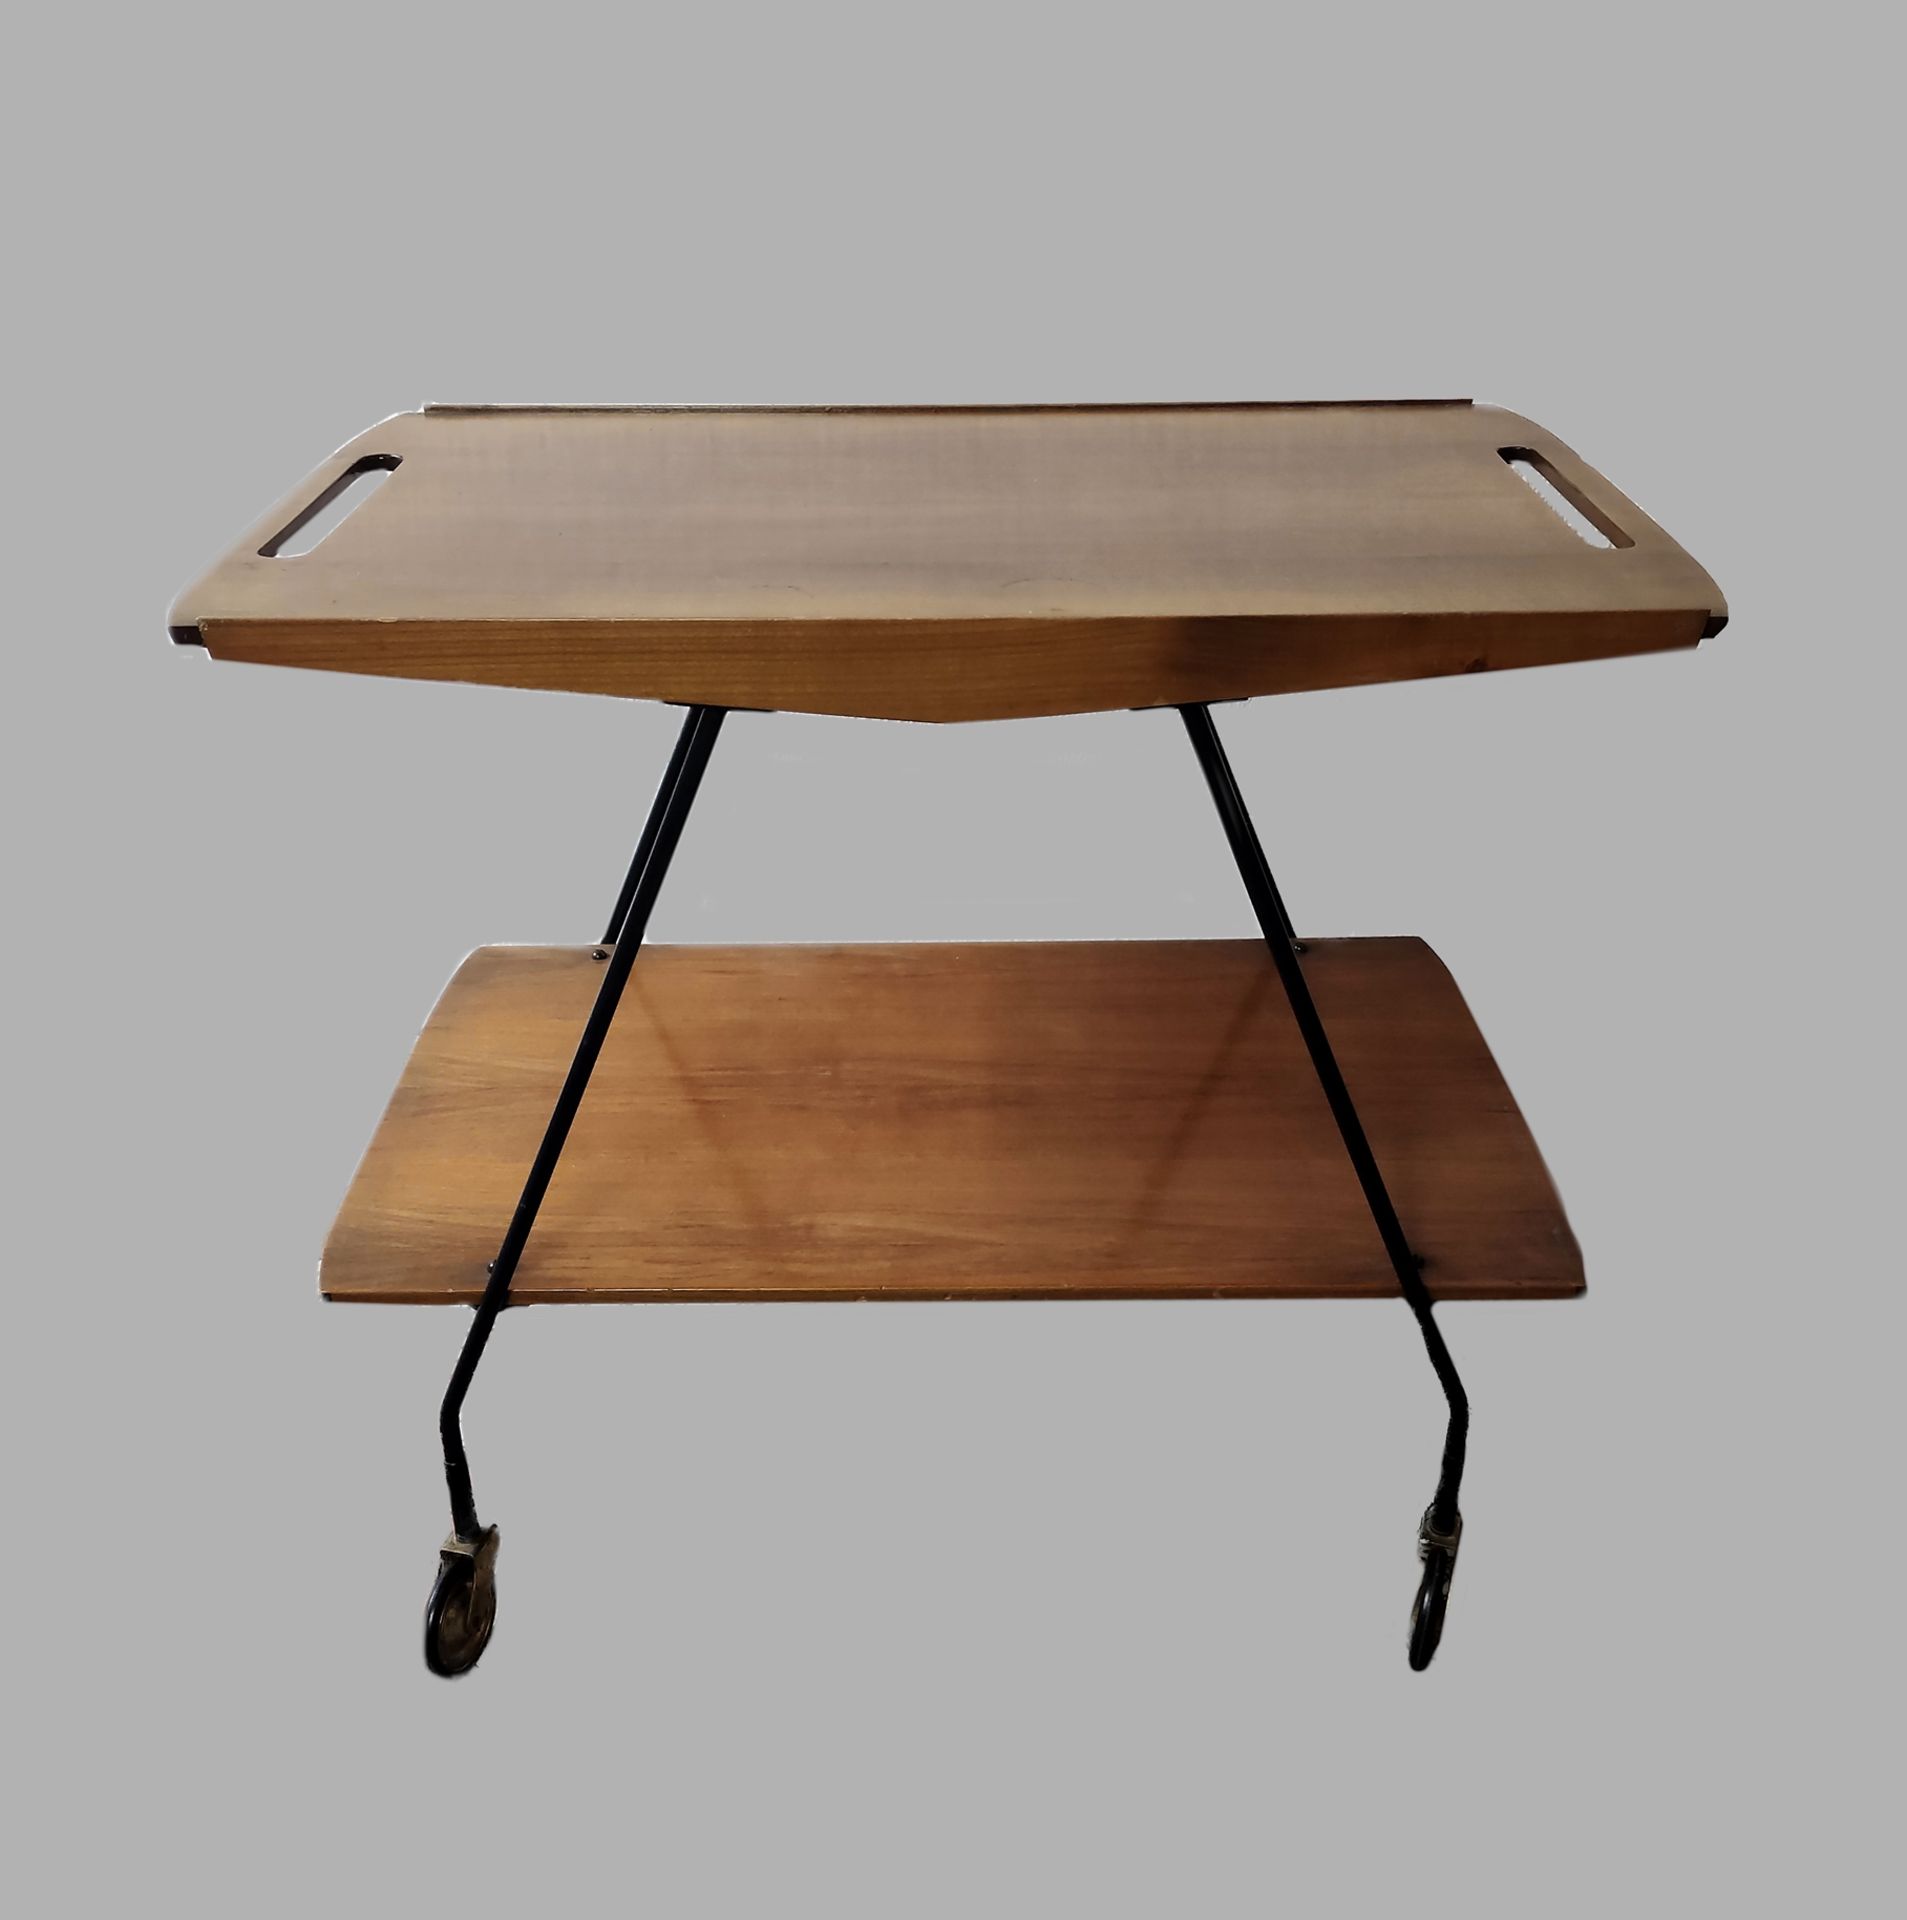 Design-Tisch, 50er/60er, Midcentury-Holztisch auf Rollen mit zwei Ebenen, Tischplatte mit offenen G